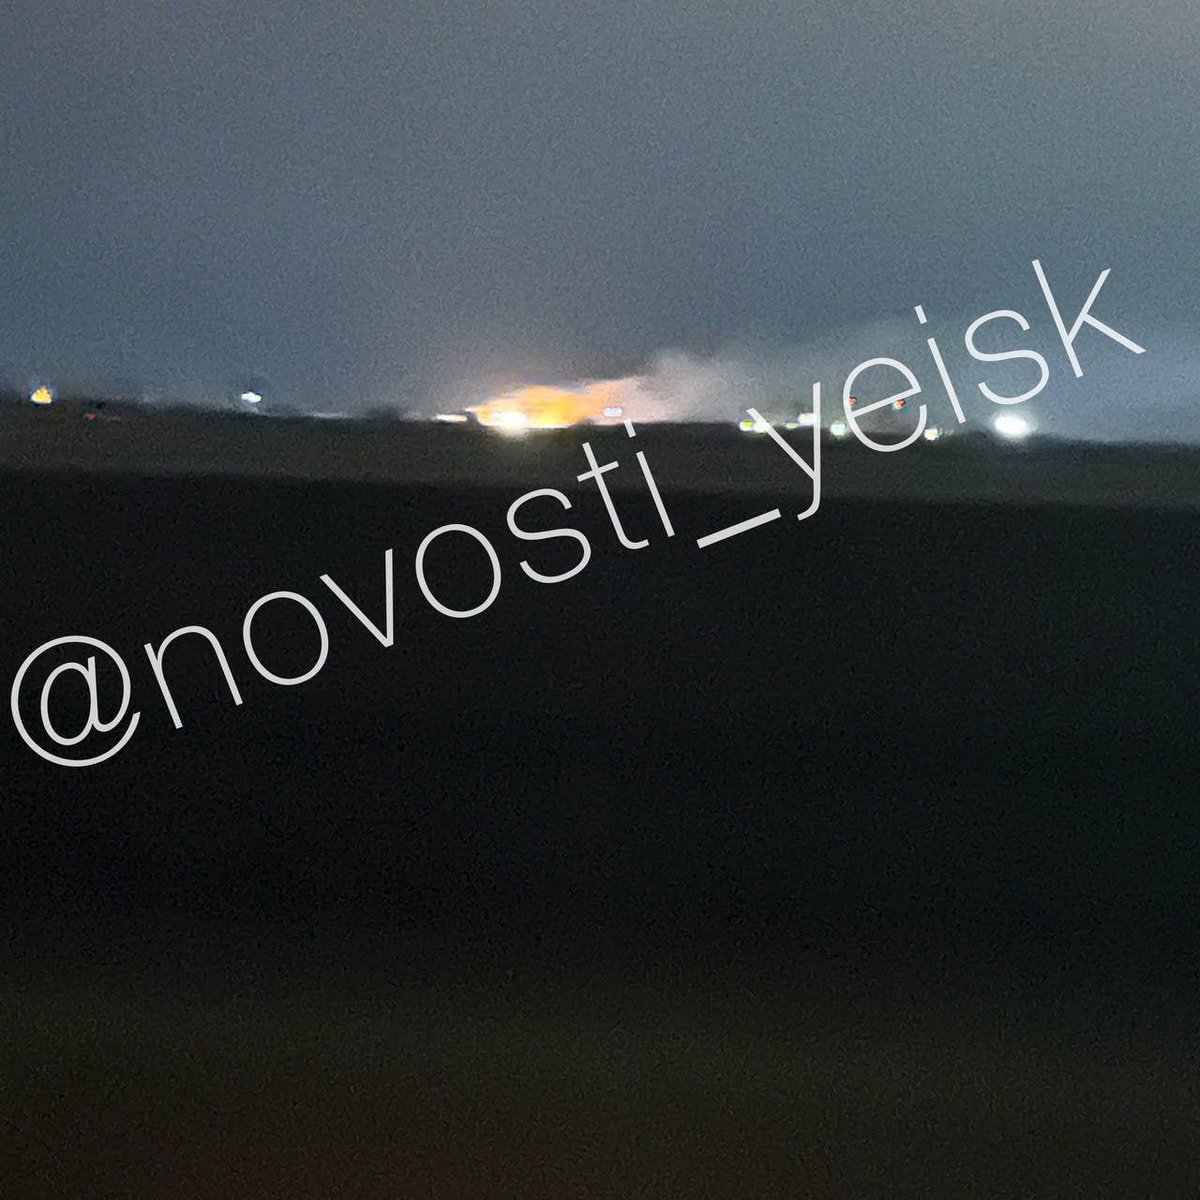 Brand och explosioner rapporterades nära flygbasen i Yeysk, Krasnodar Krai